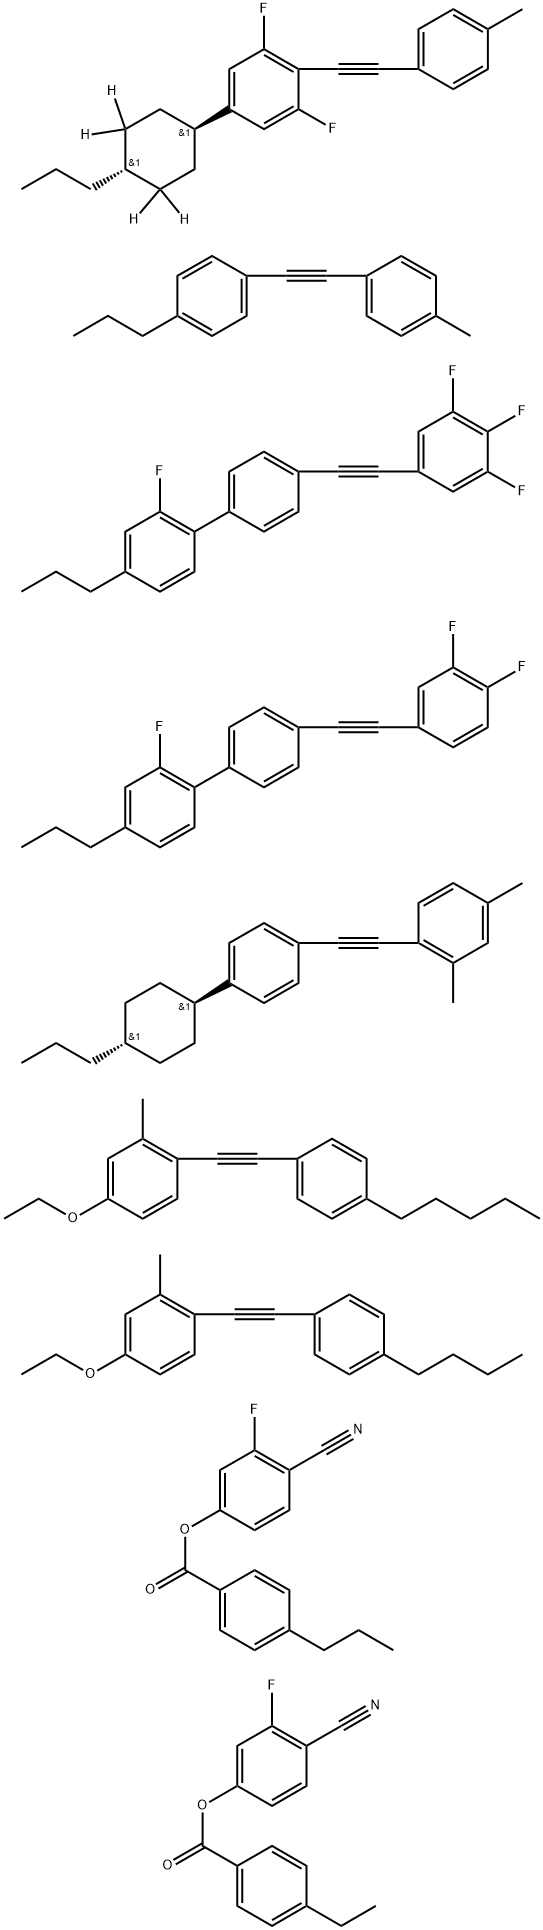 Benzoic acid, 4-ethyl-, 4-cyano-3-fluorophenyl ester, mixt. with 1-[(4-butylphenyl)ethynyl]-4-ethoxy-2-methylbenzene, 4-cyano-3-fluorophenyl 4-propylbenzoate, 1,3-difluoro-2-[(4-methylphenyl)ethynyl]-5-(trans-4-propylcyclohexyl-3,3,5,5-d4)benzene, 4′-[(3,4-difluorophenyl)ethynyl]-2-fluoro-4-propyl-1,1′-biphenyl, 2,4-dimethyl-1-[[4-(trans-4-propylcyclohexyl)phenyl]ethynyl]benzene, 4-ethoxy-2-methyl-1-[(4-pentylphenyl)ethynyl]benzene, 2-fluoro-4-propyl-4′-[(3,4,5-trifluorophenyl)ethynyl]-1,1′-biphenyl and 1-[(4-methylphenyl)ethynyl]-4-propylbenzene,329769-13-3,结构式